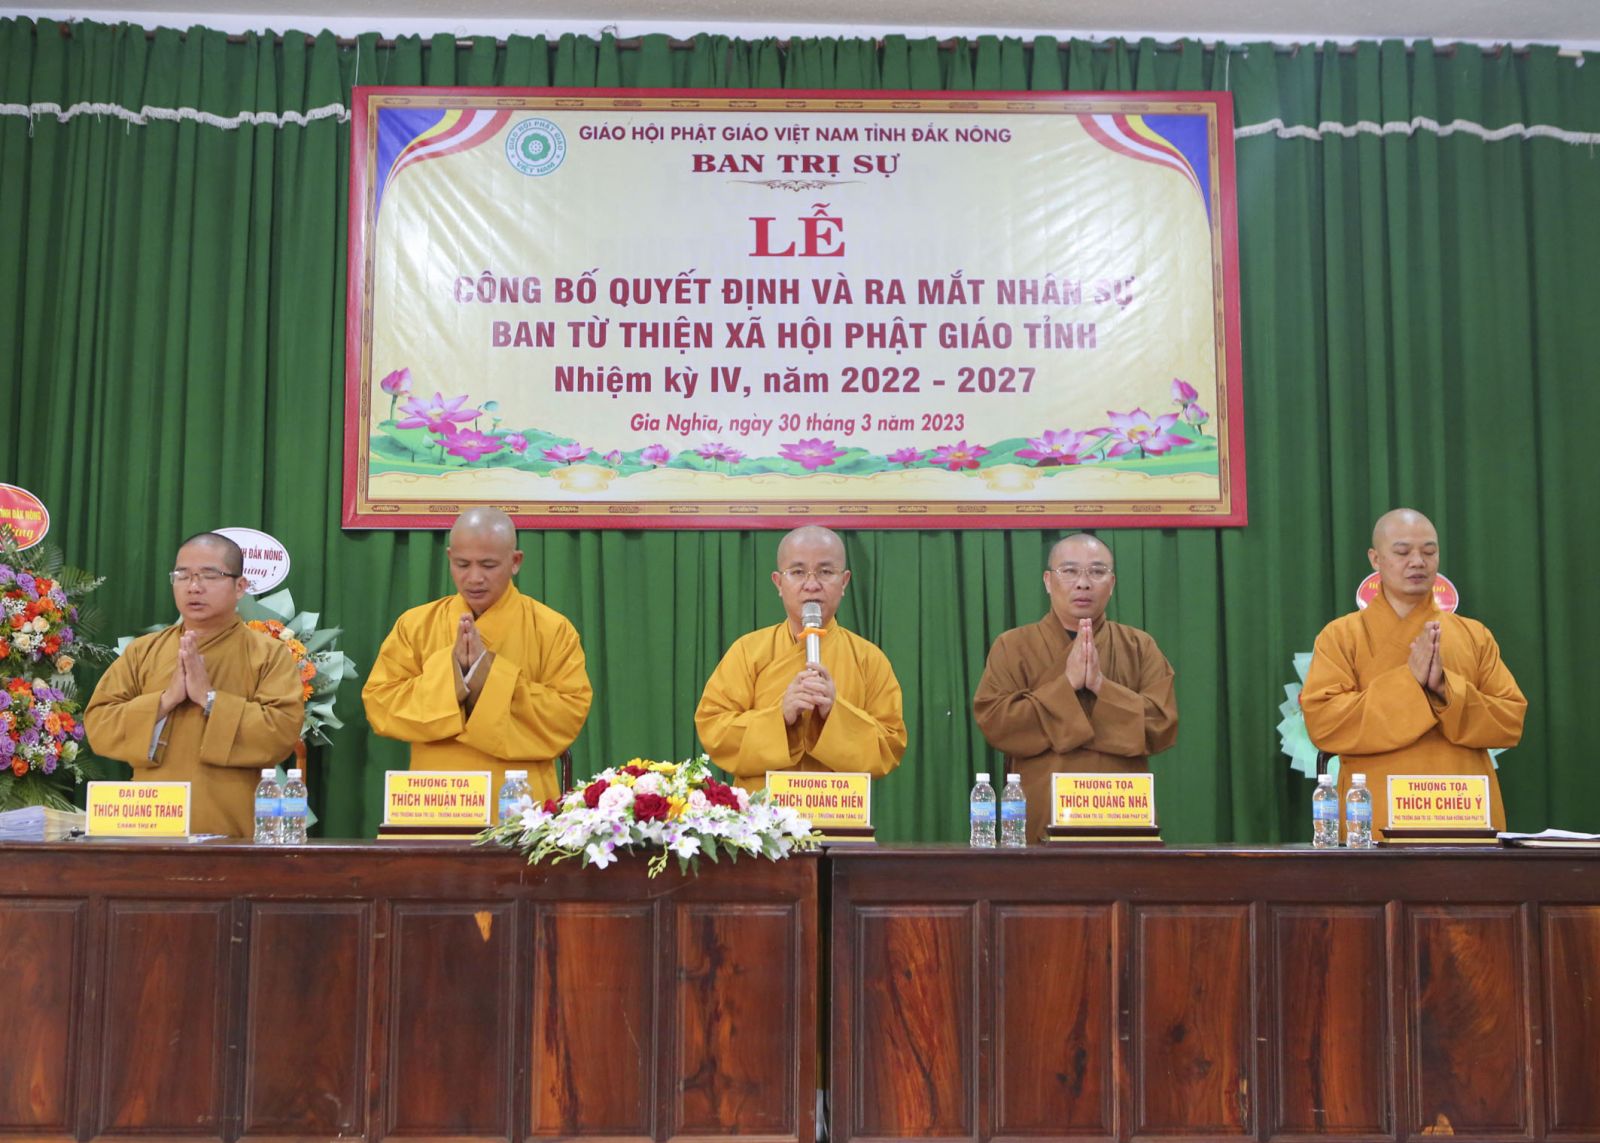 Ra mắt Ban Từ thiện Xã hội Phật giáo tỉnh Đăk Nông
Nhiệm Kì IV ( 2022-2027)  .
